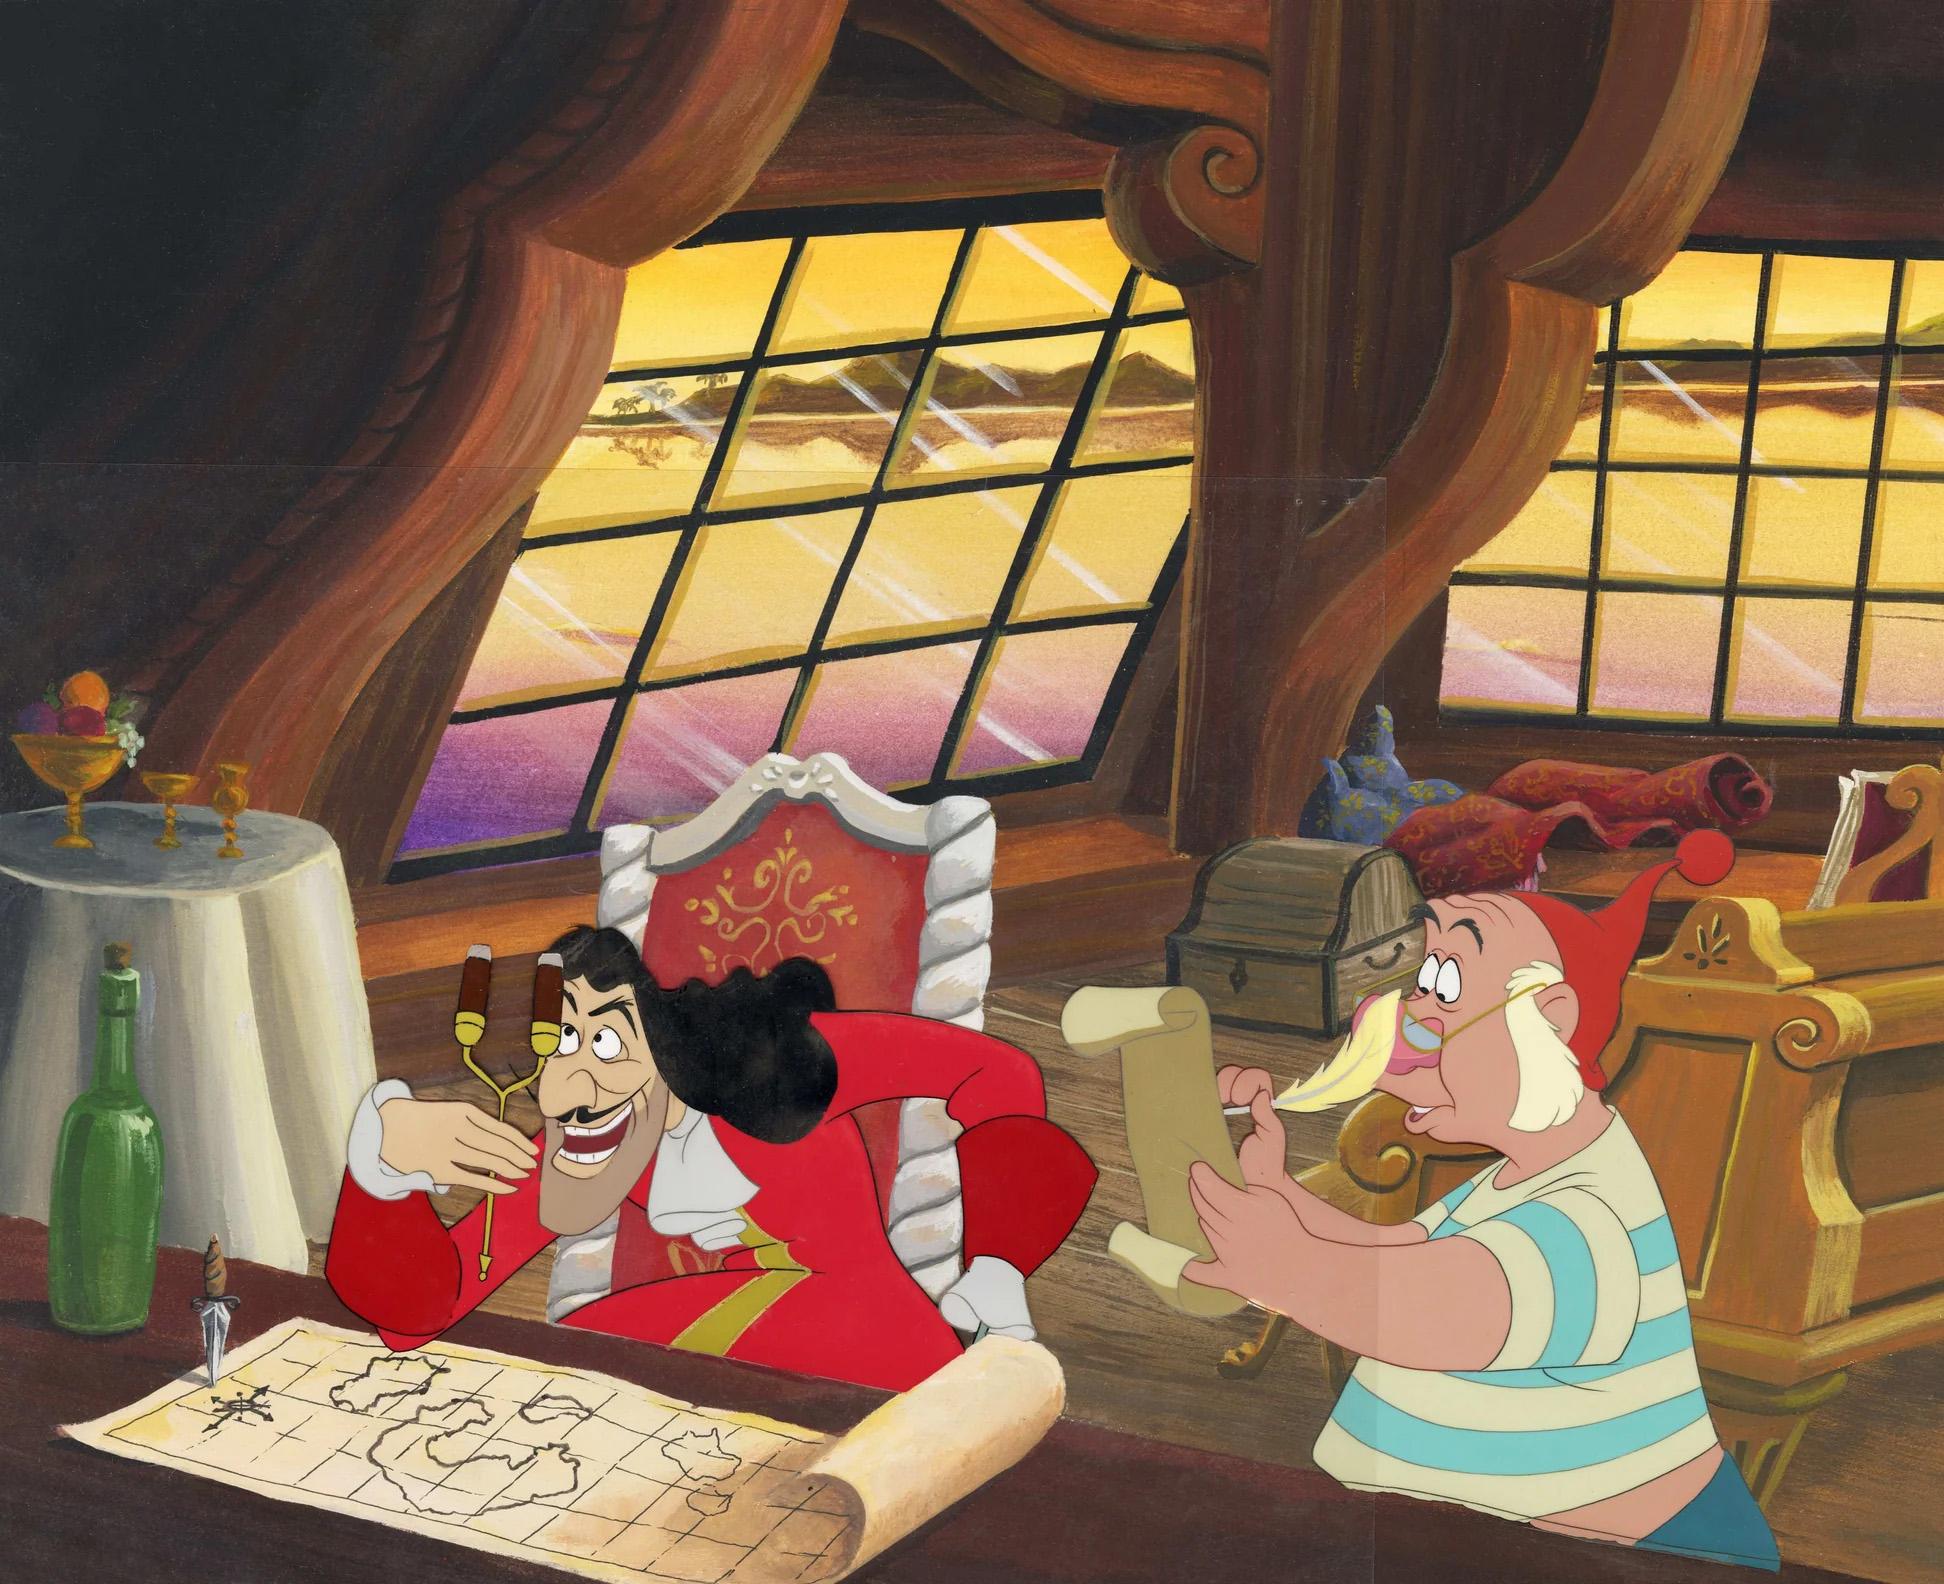 Production originale de Peter Pan : Hook and Smee - Art de Walt Disney Studio Artists